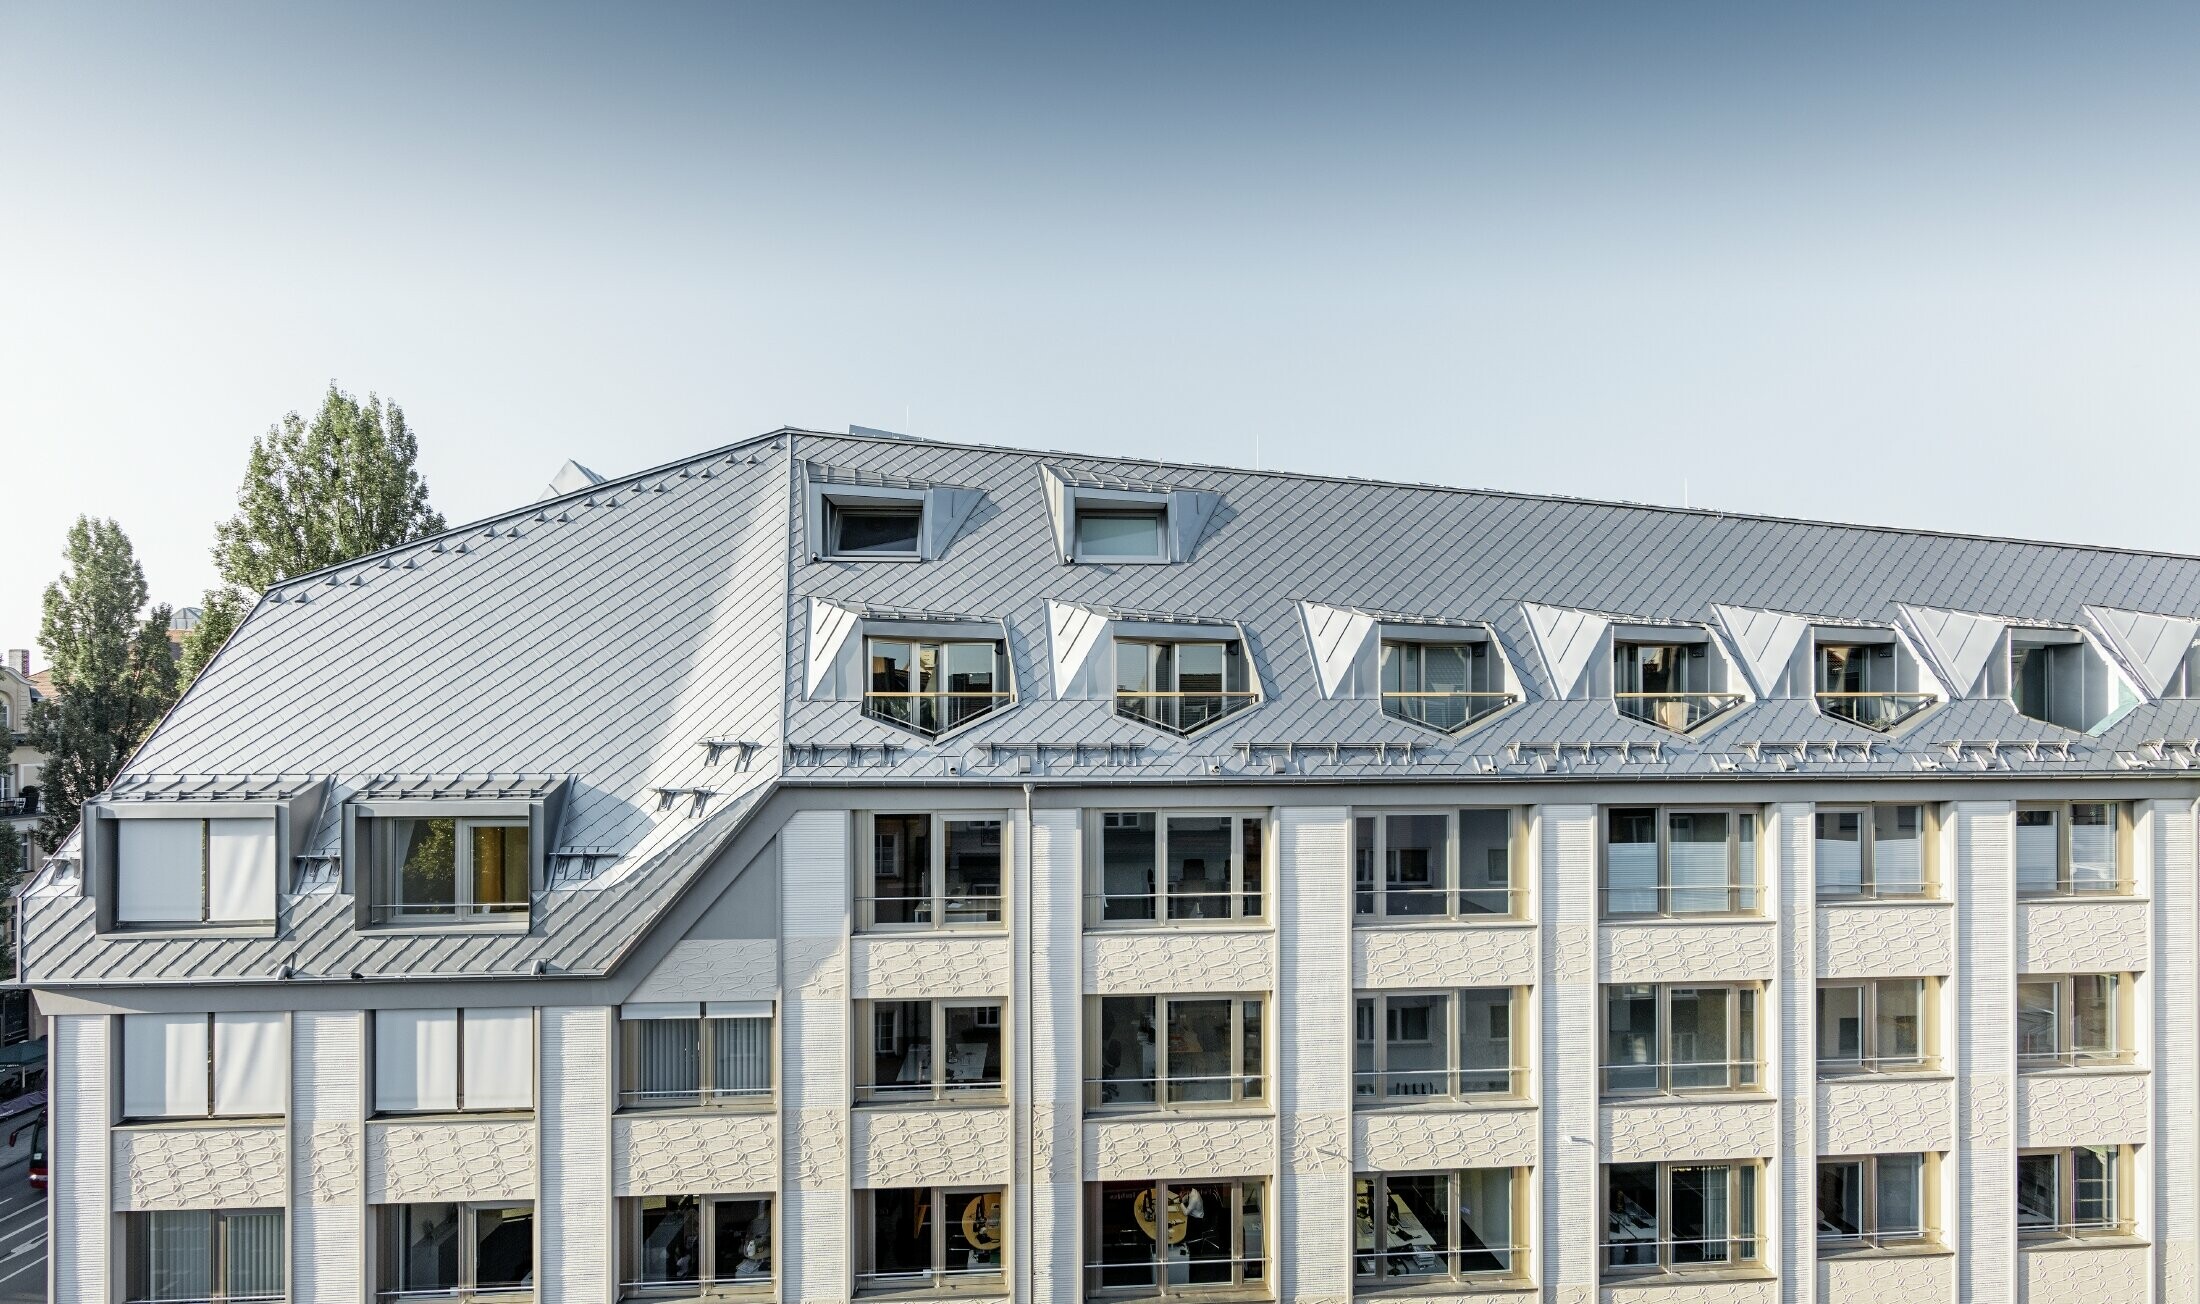 Zrewitalizowane mieszkania mansardowe z obszernymi, otwartymi galeriami, mieszczące się w budynku mieszkalno-biurowym przy skrzyżowaniu ulic Leopoldstraße/Hohenzollernstraße w Monachium, z pokryciem dachowym wykonanym z dachówki romb PREFA